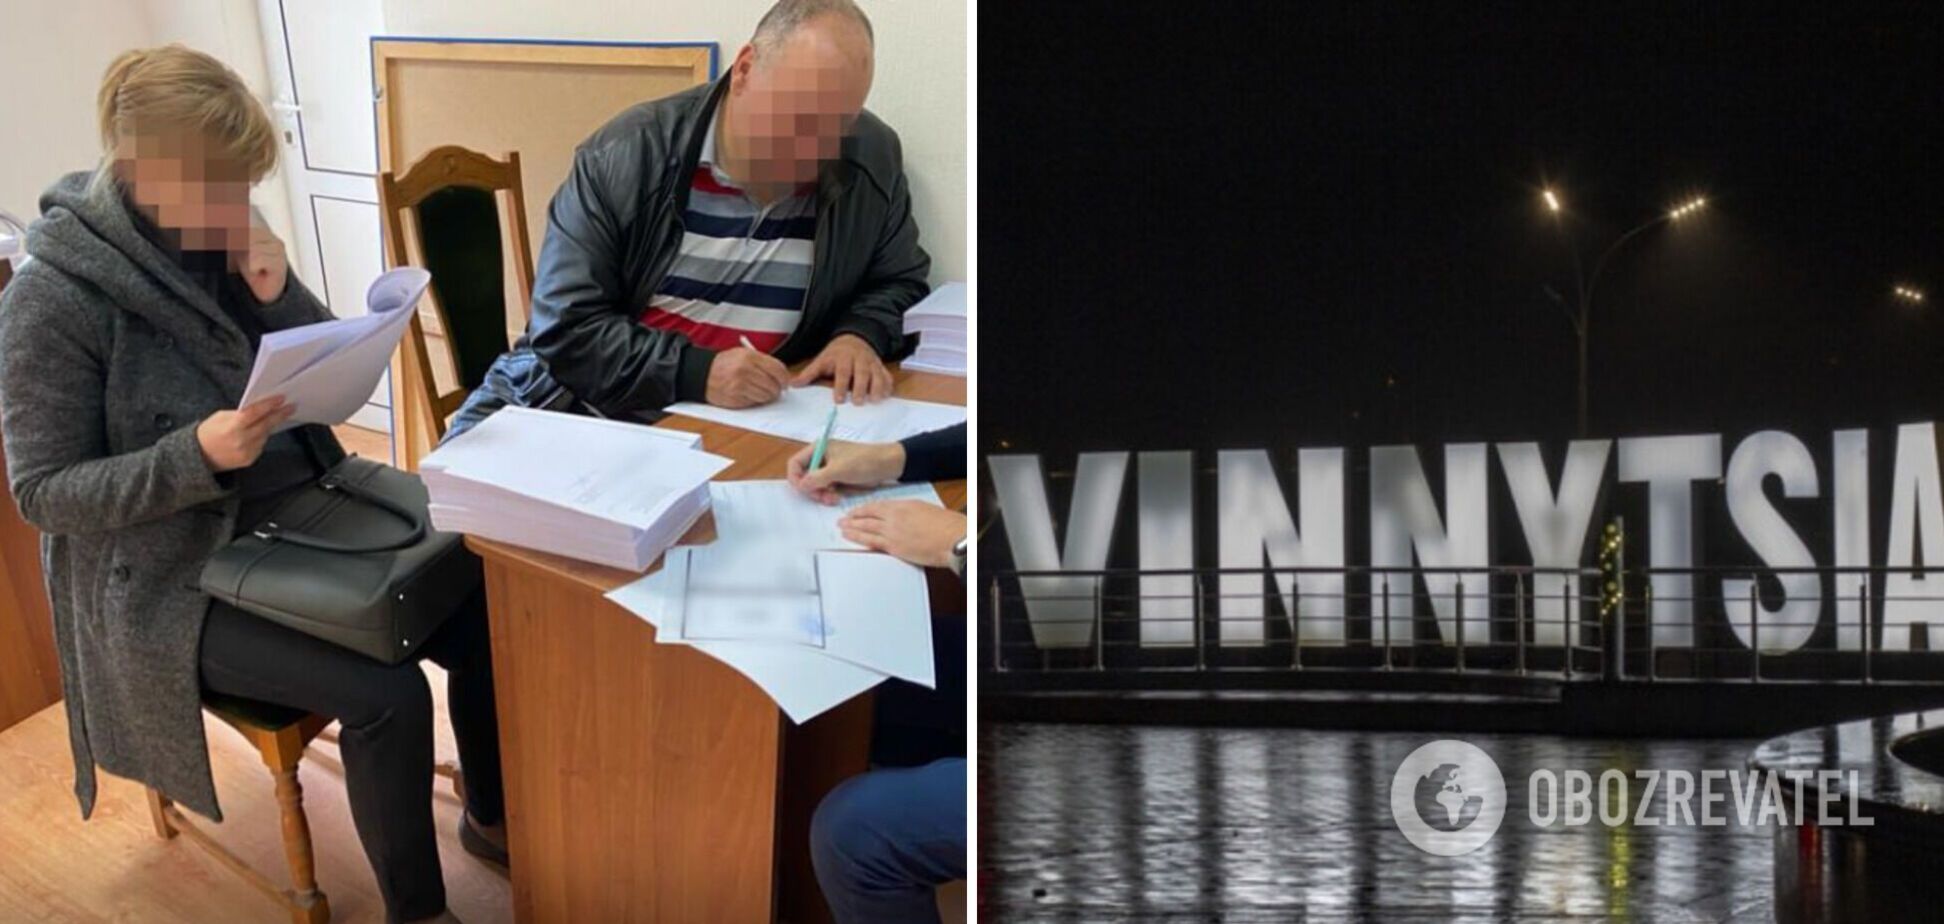 Нанесли ущерб на 10,3 млн грн: должностным лицам 'Винницаоблводоканала' сообщено о подозрении. Фото